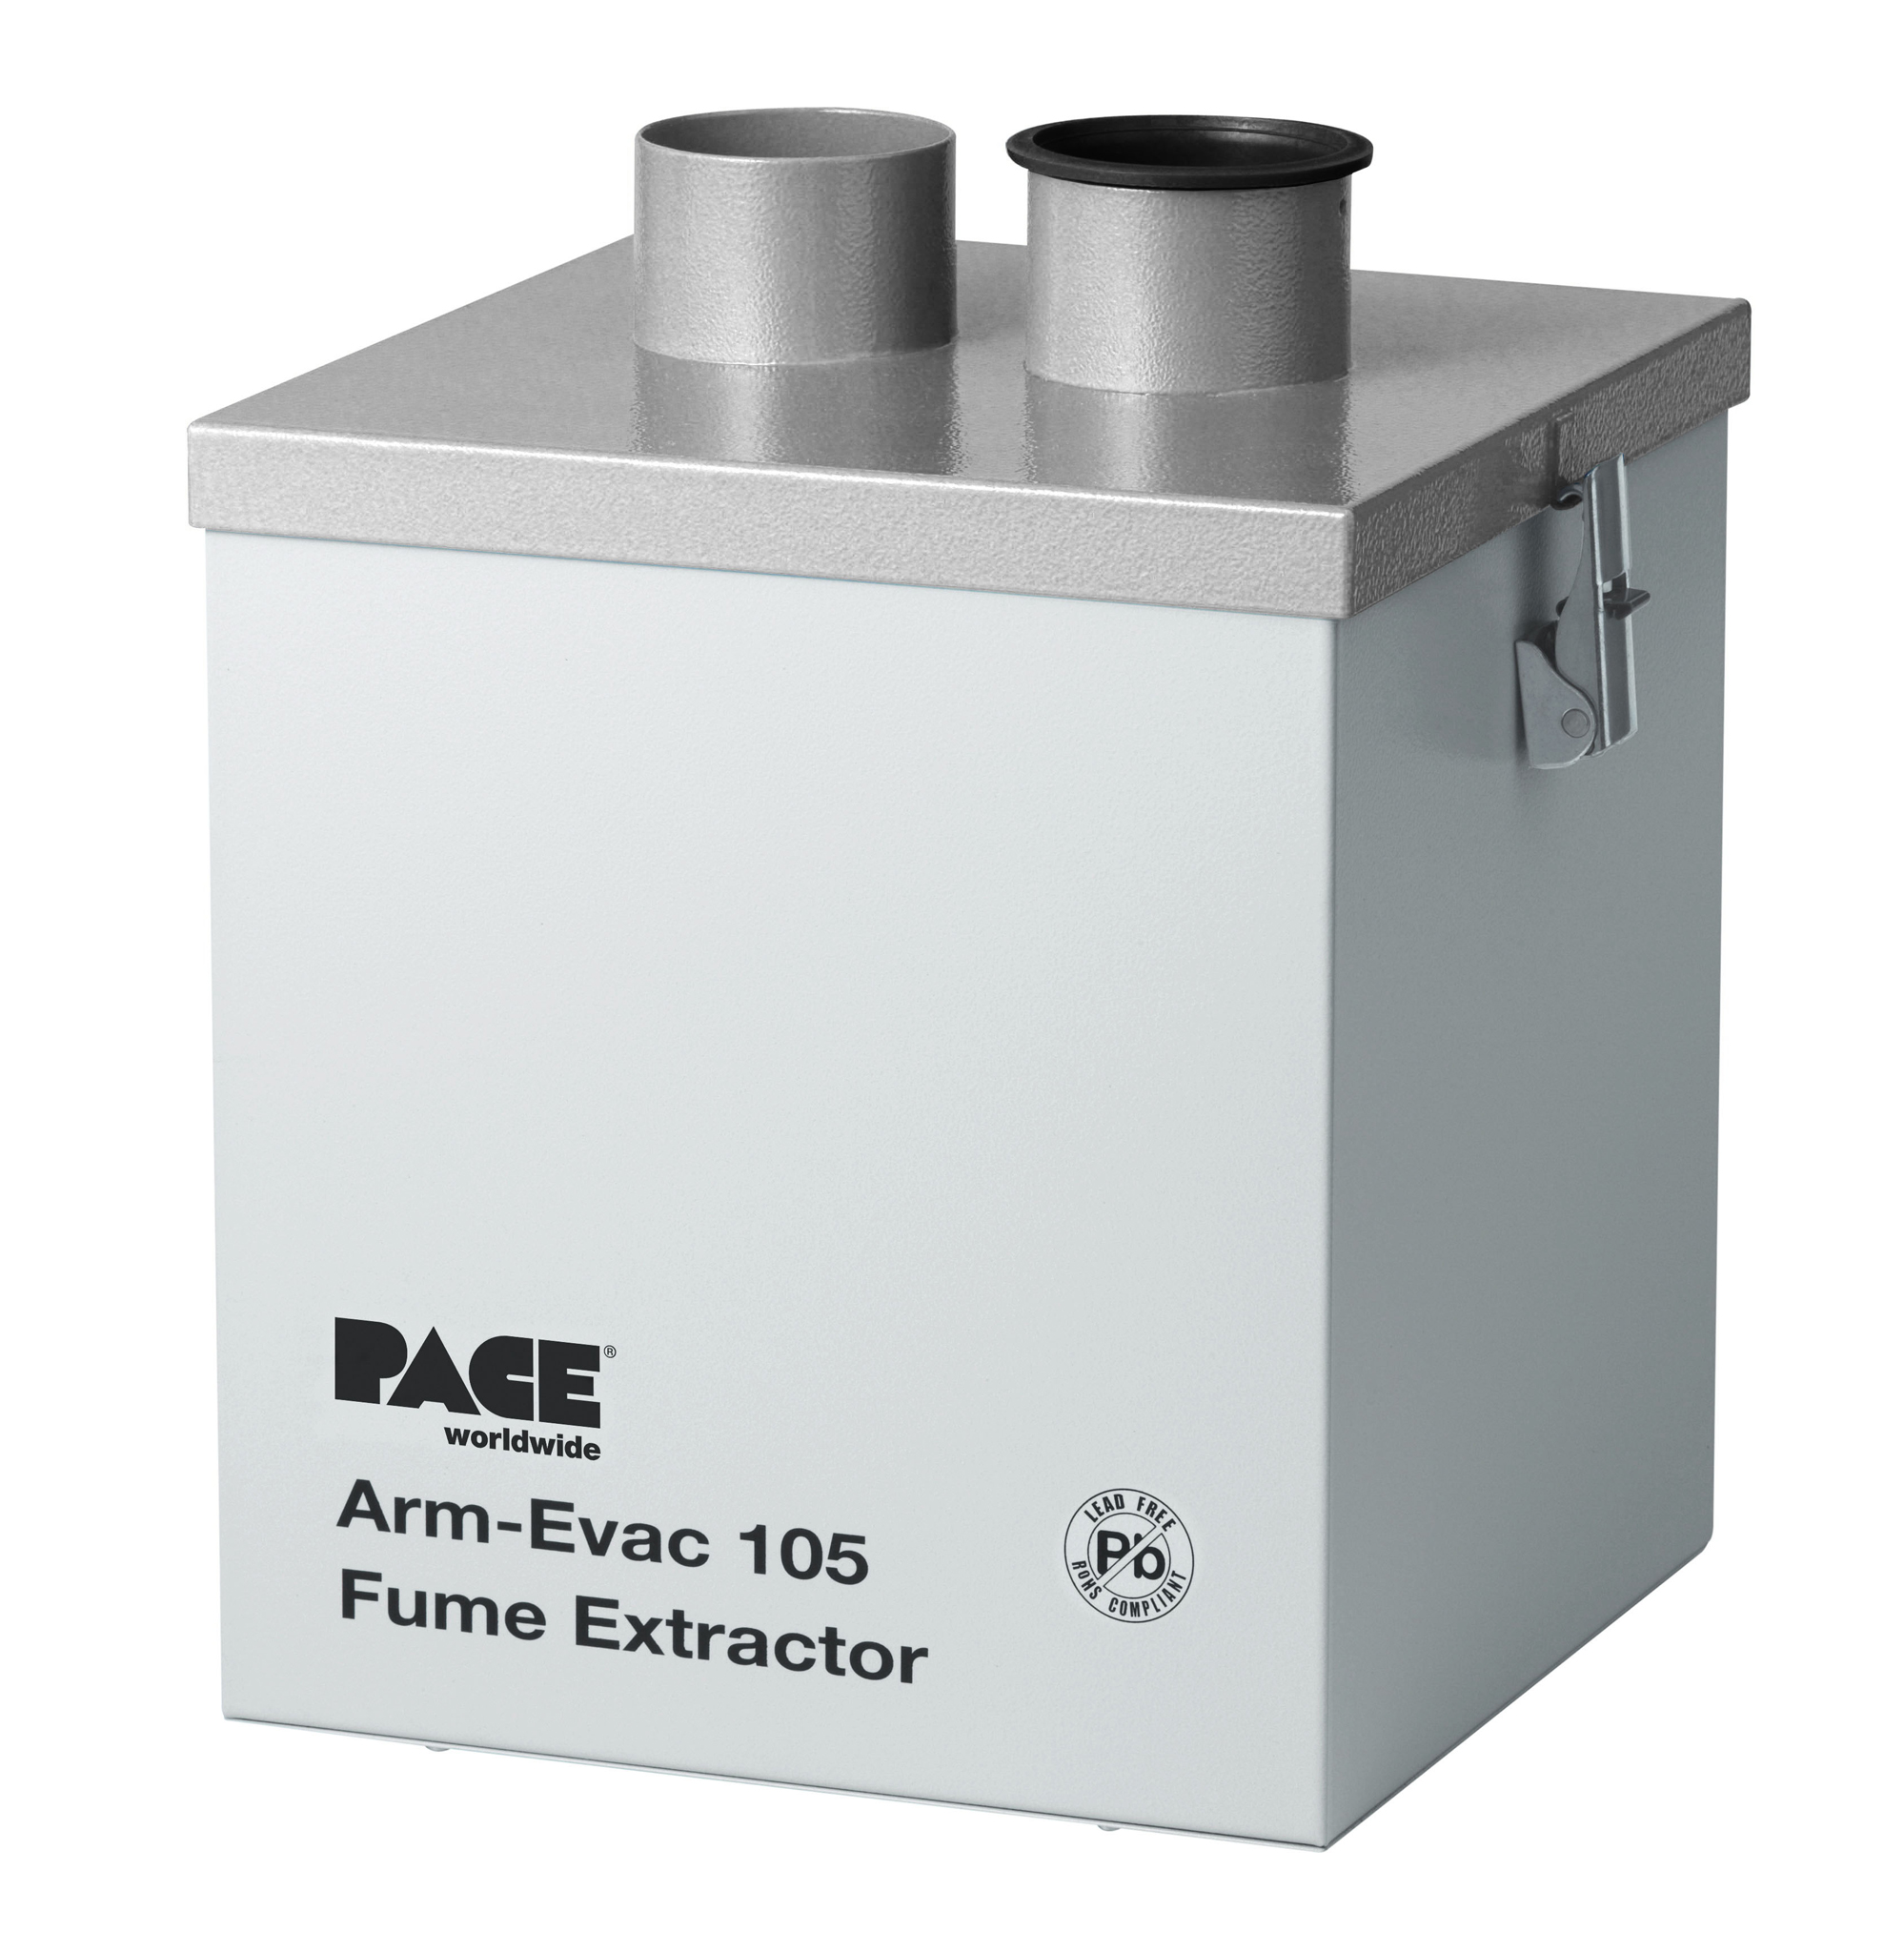 ARM-EVAC 105 Fume Extractor, 230 Volt